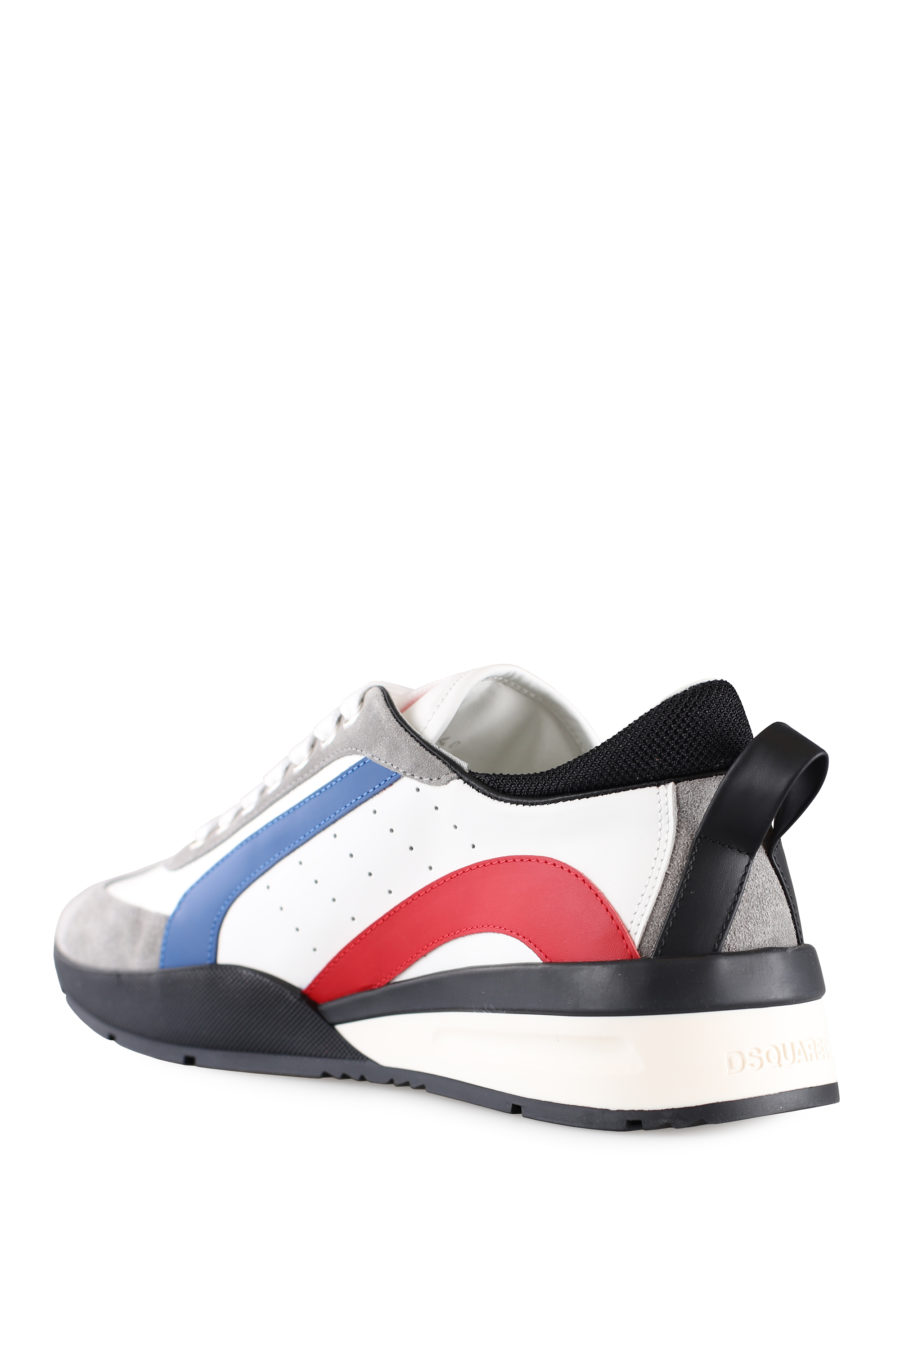 Zapatillas blancas multicolor y logo pequeño - IMG 0021